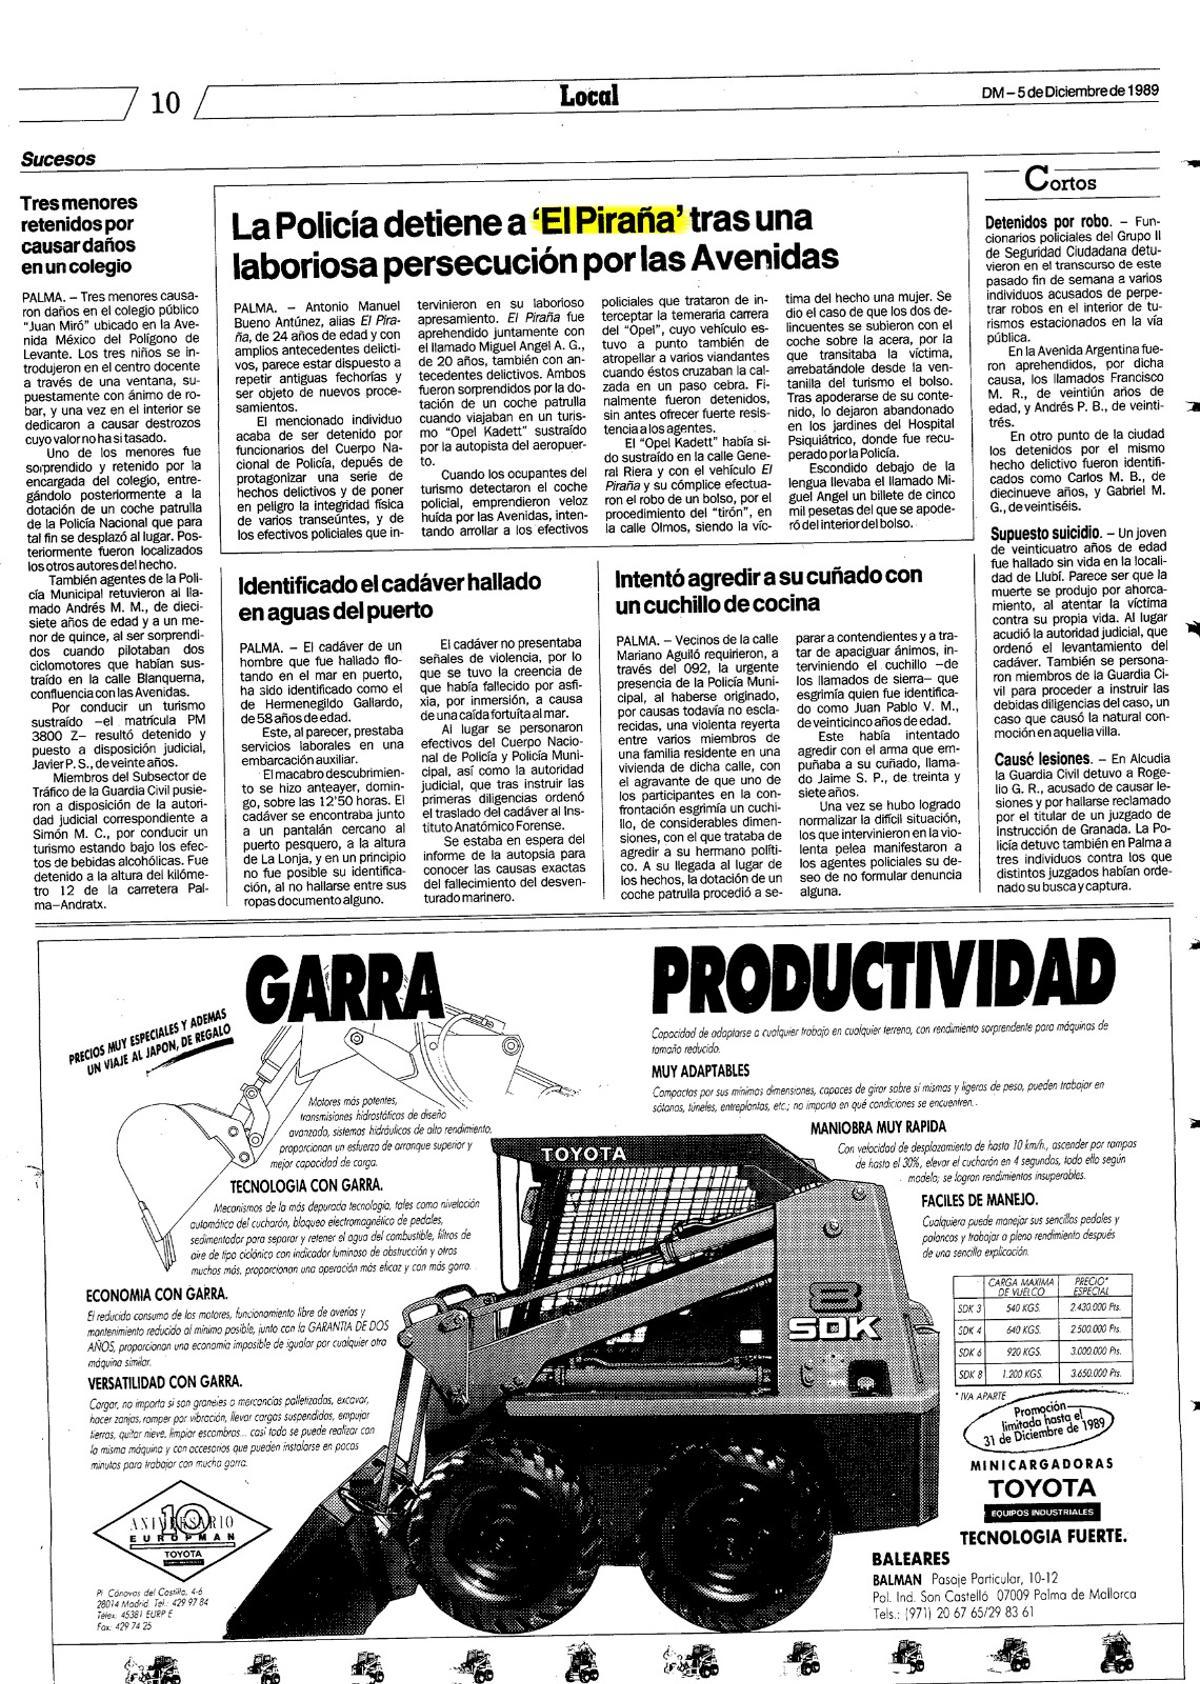 Noticia publicada en Diario de Mallorca el 5 de diciembre de 1989 sobre uno de los arrestos de 'El Piraña'.